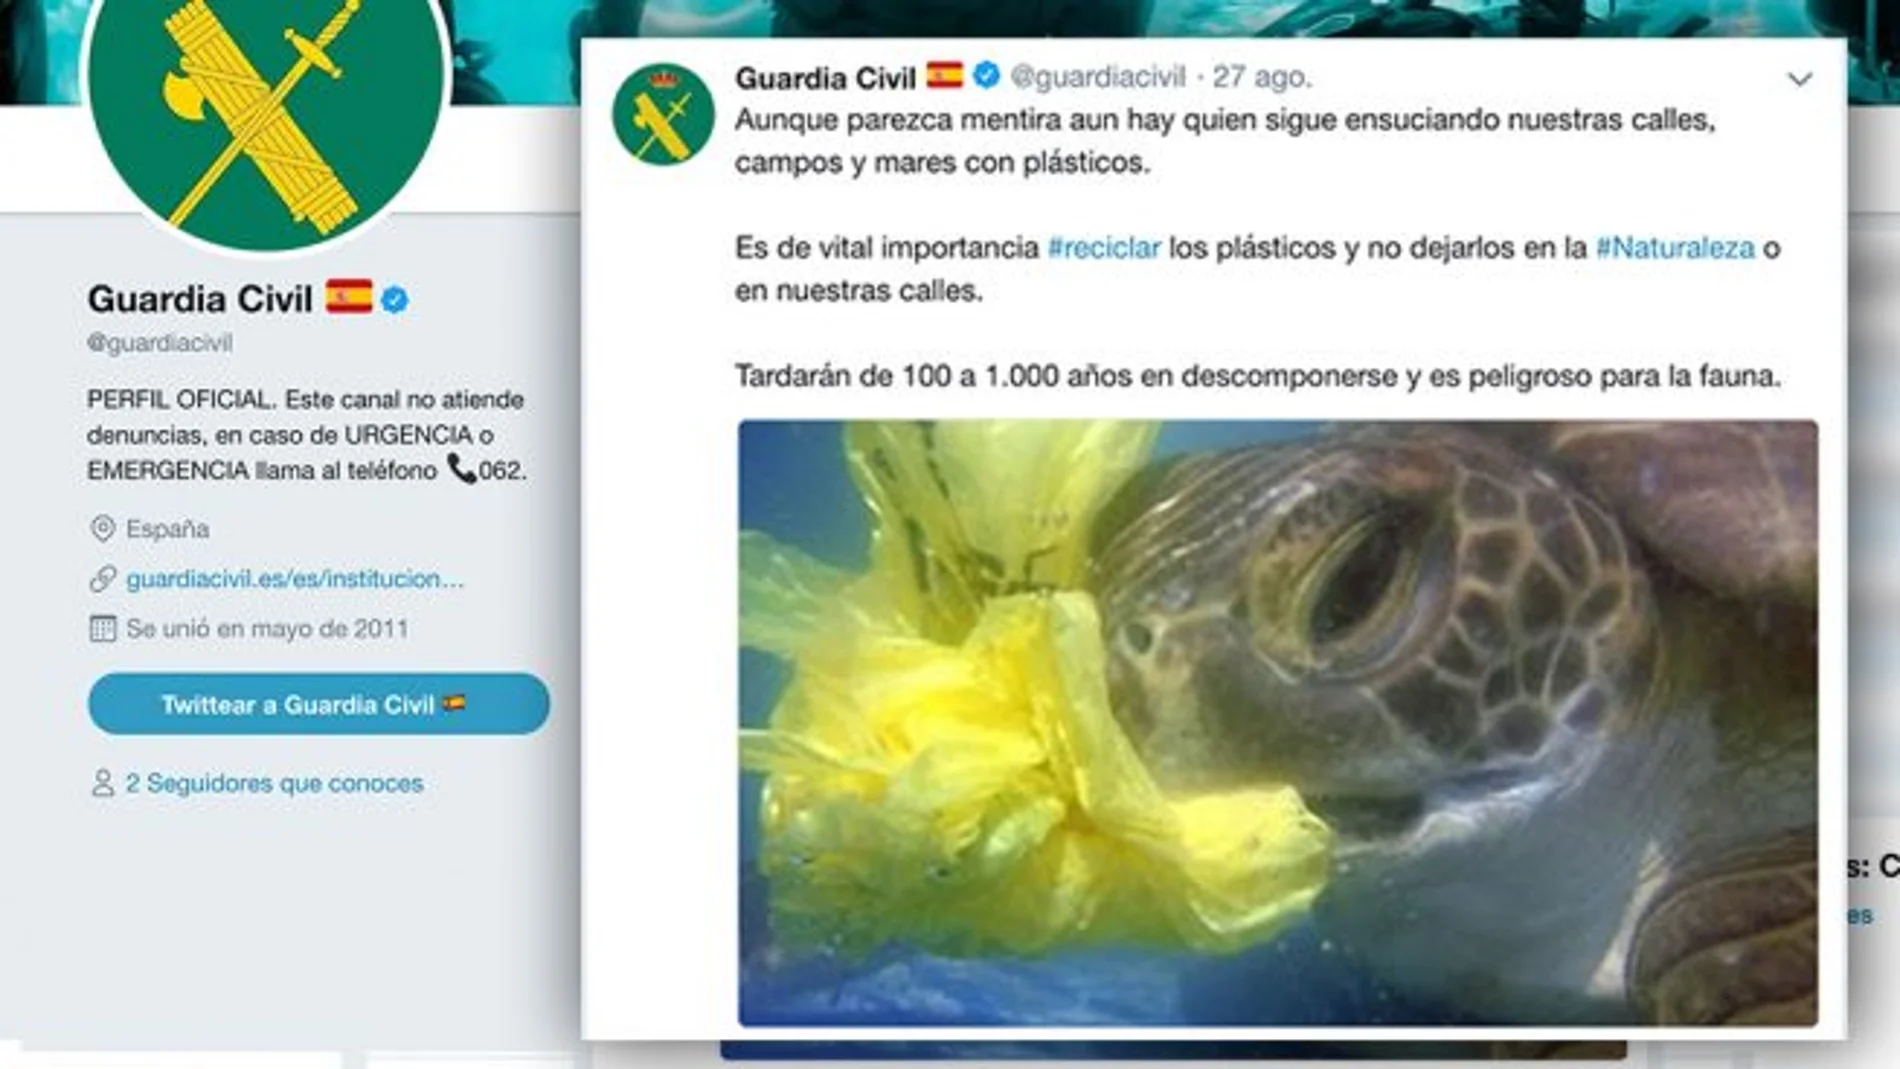 Imagen del tuit de la Guardia Civil sobre la contaminación de los plásticos / Twitter